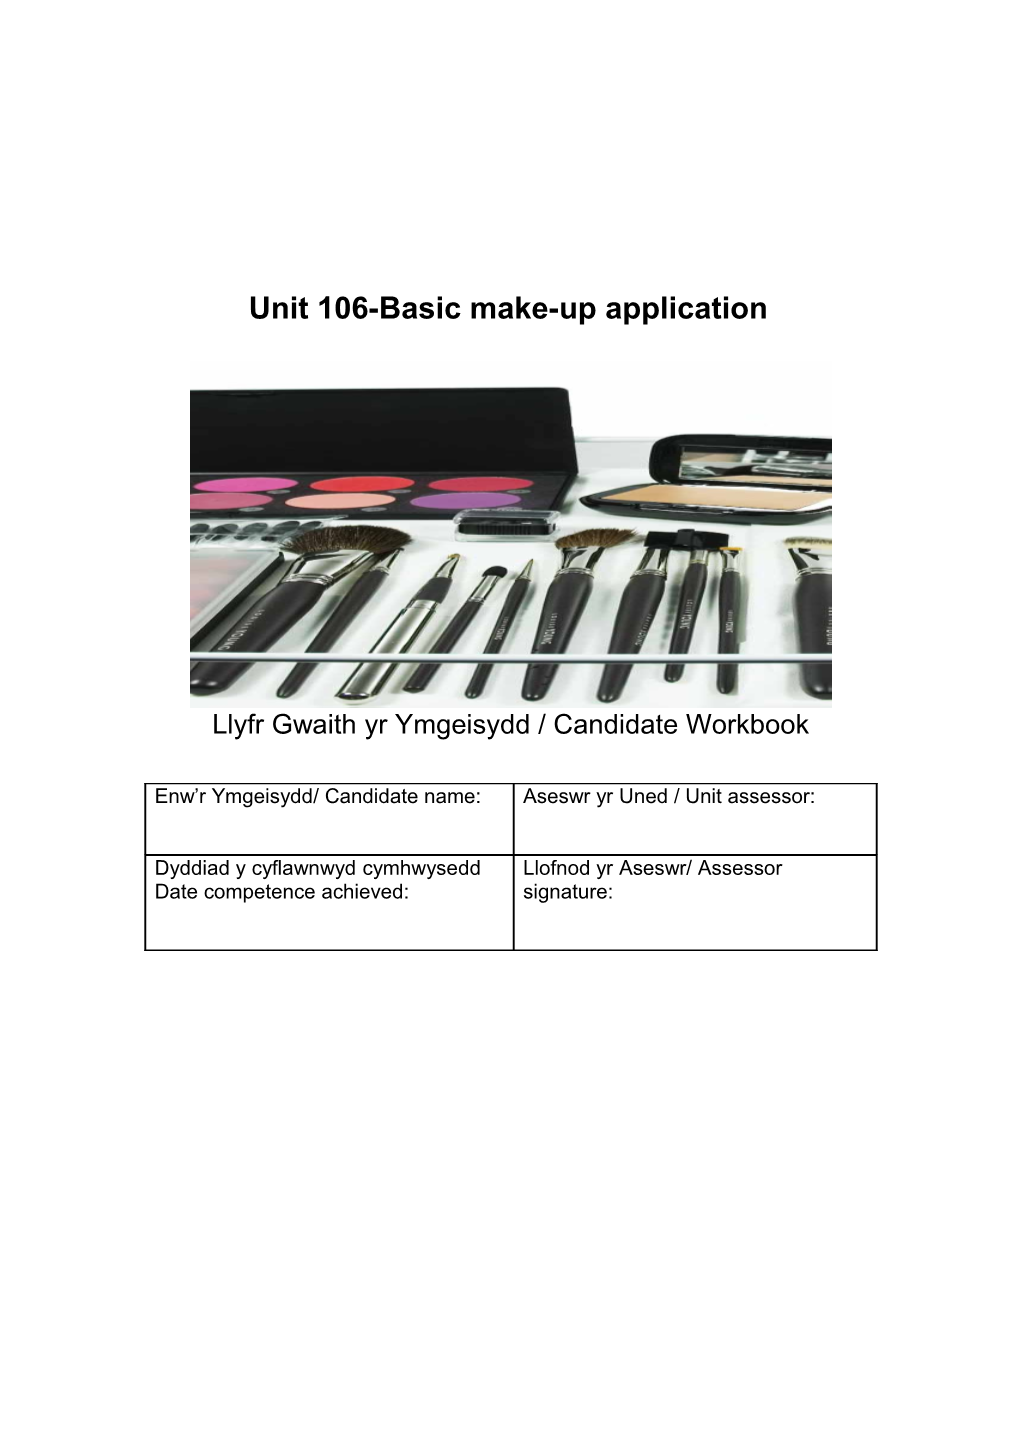 Unit 106-Basic Make-Up Application